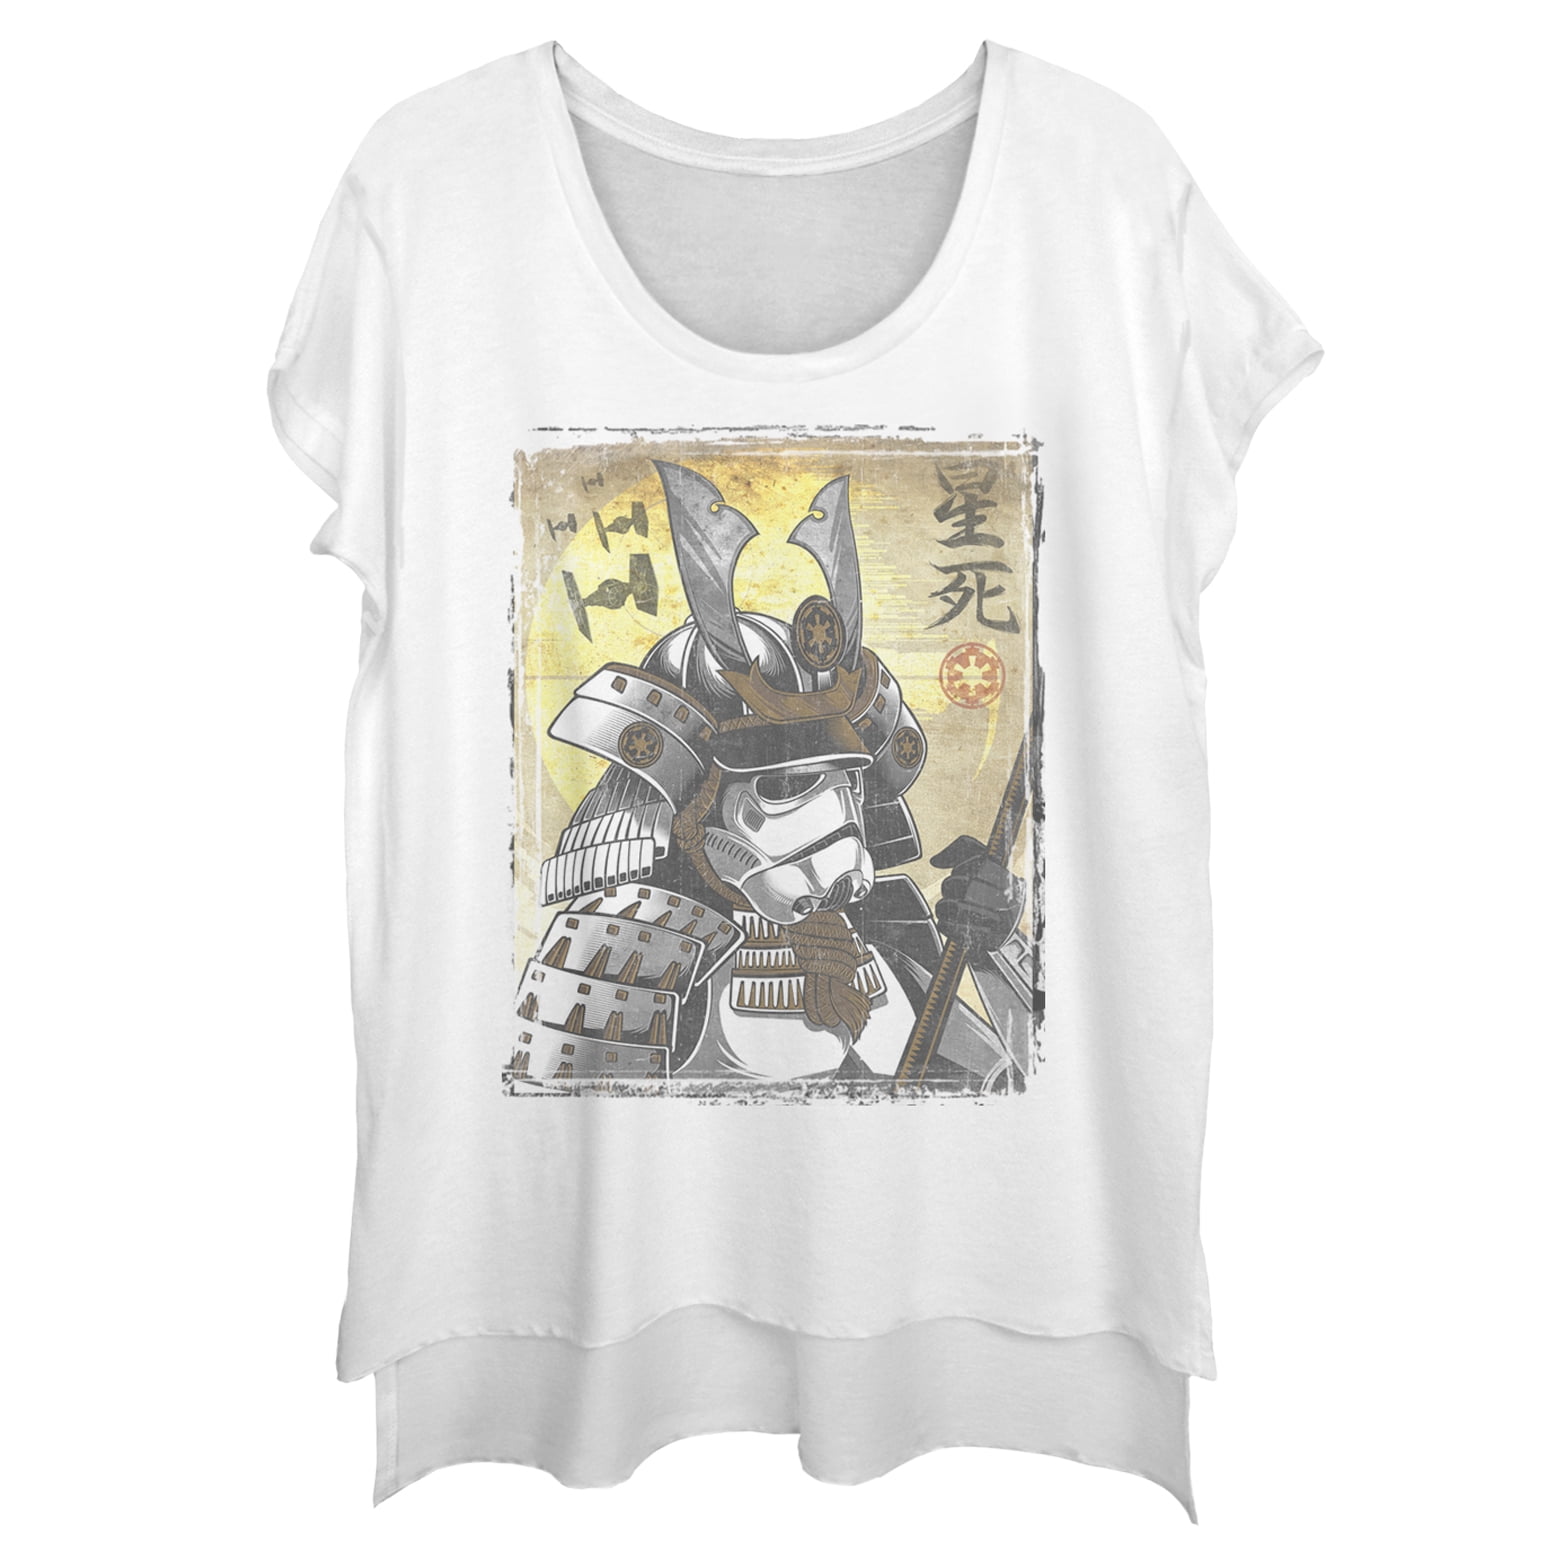 star wars samurai shirt